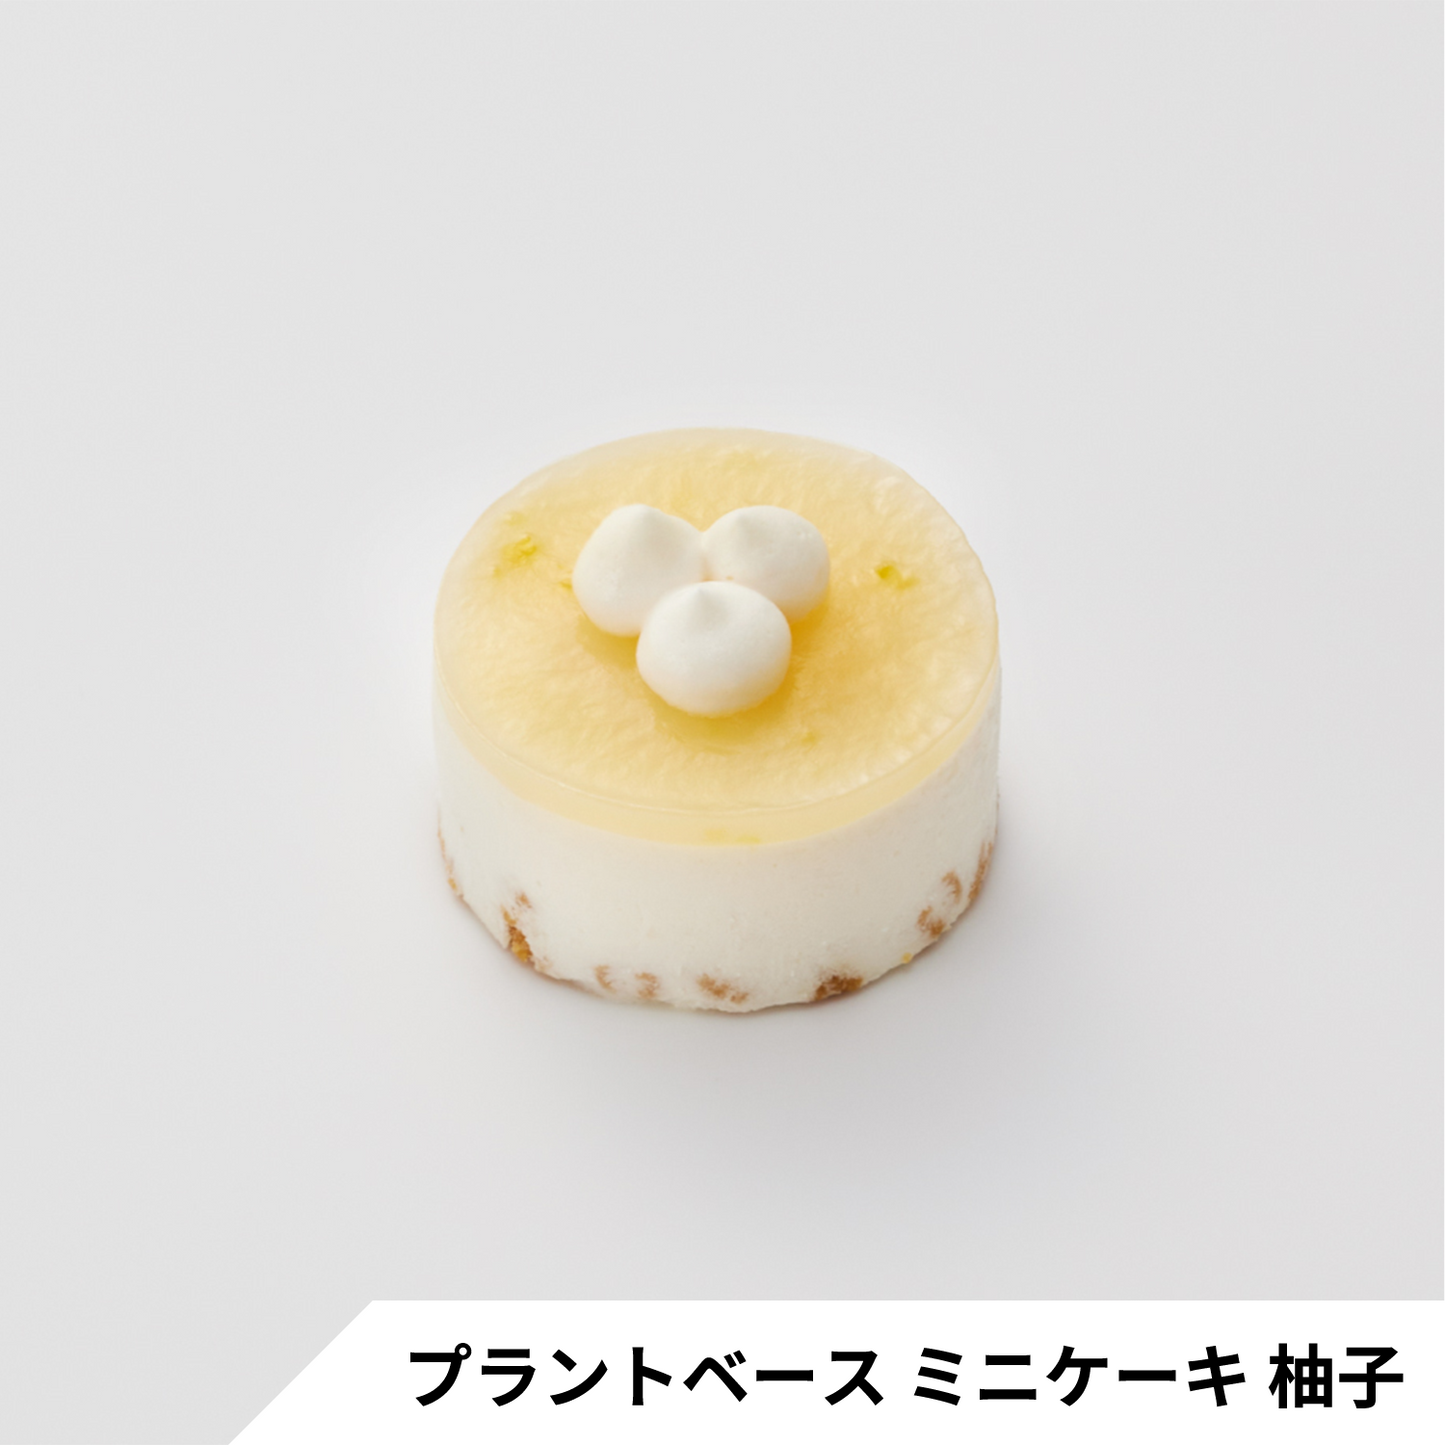 【プラントベース】ミニケーキ2種 食べ比べセット